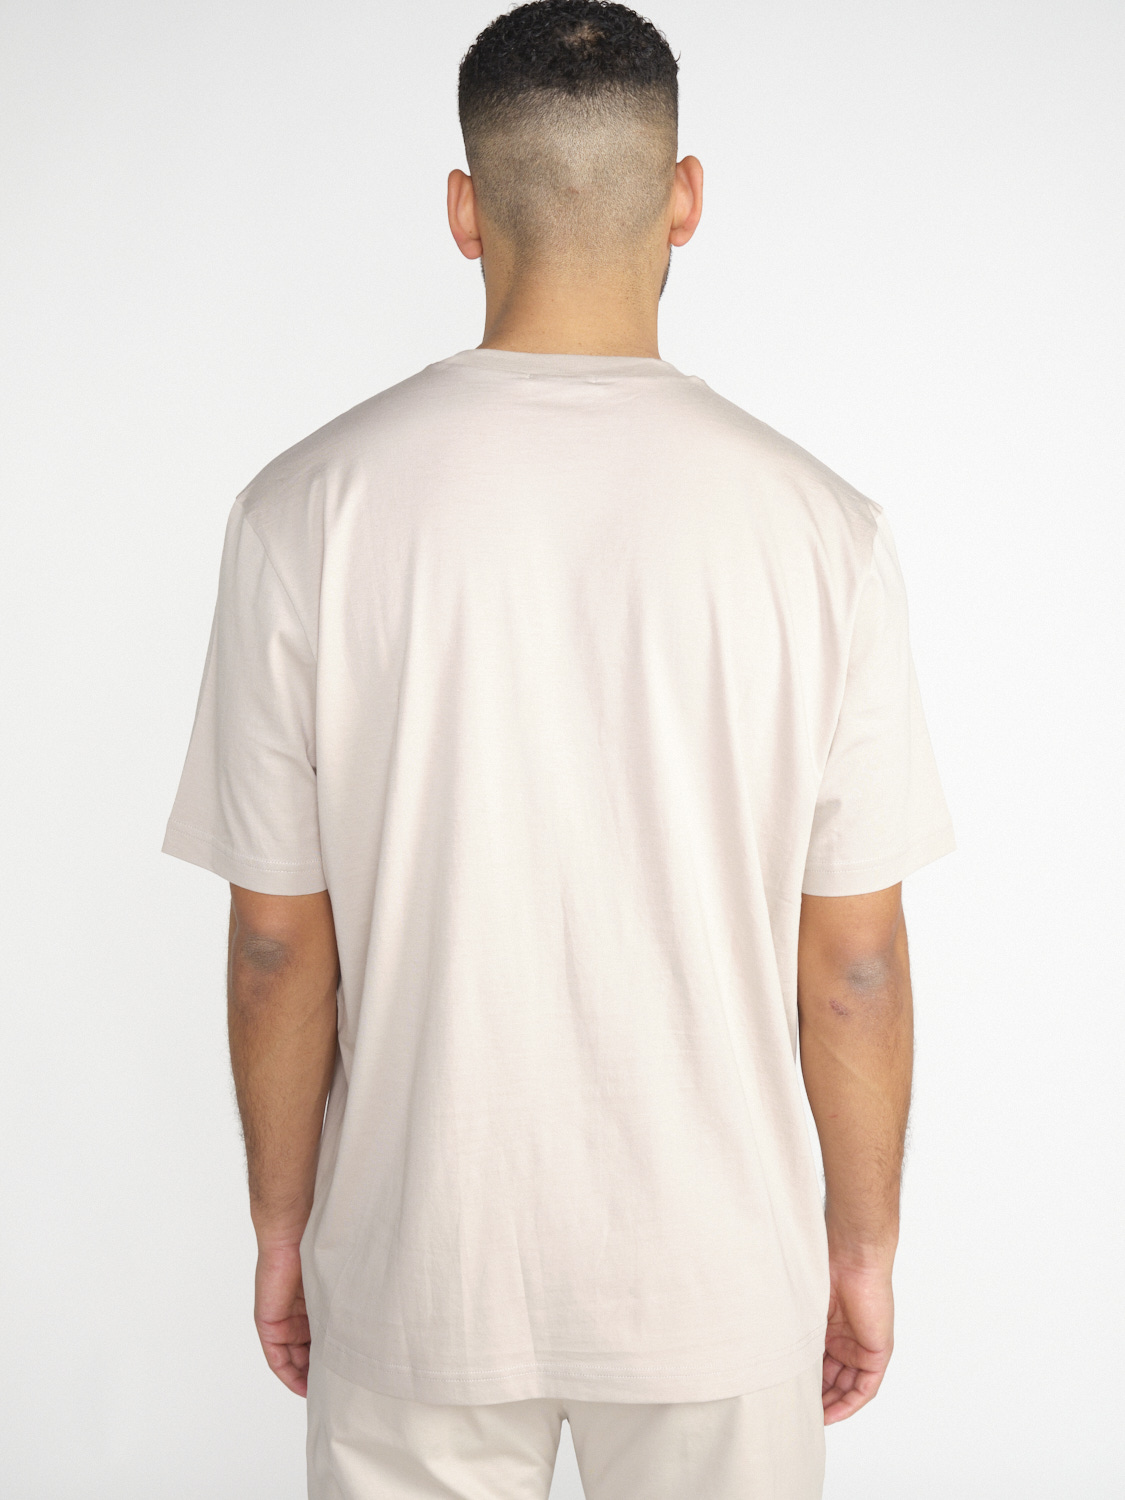 Stefan Brandt Eli 30 – cotton shirt  beige XXL